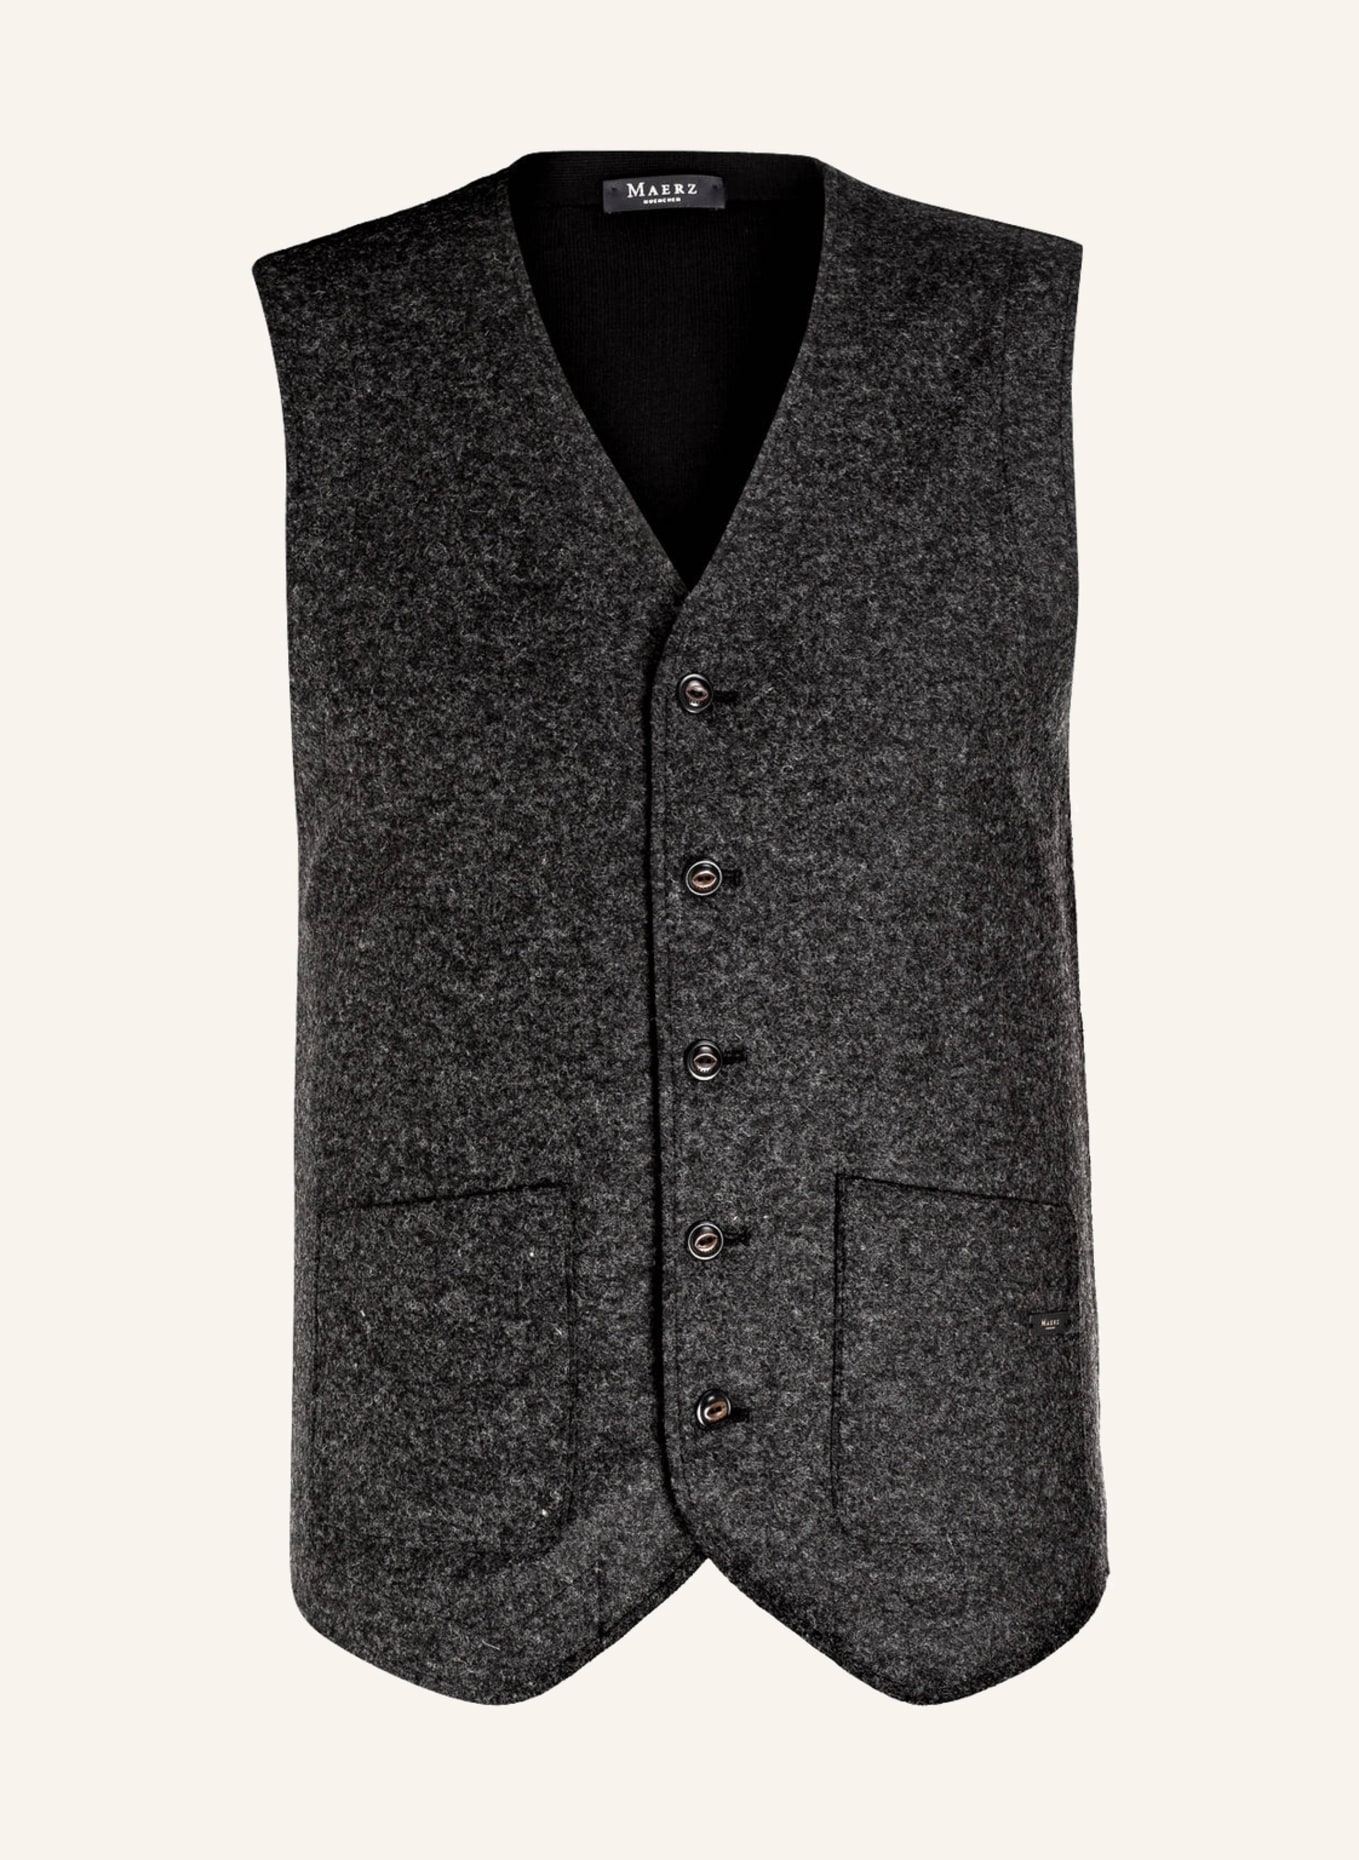 MAERZ MUENCHEN Suit vest, Color: DARK GRAY/ BLACK (Image 1)